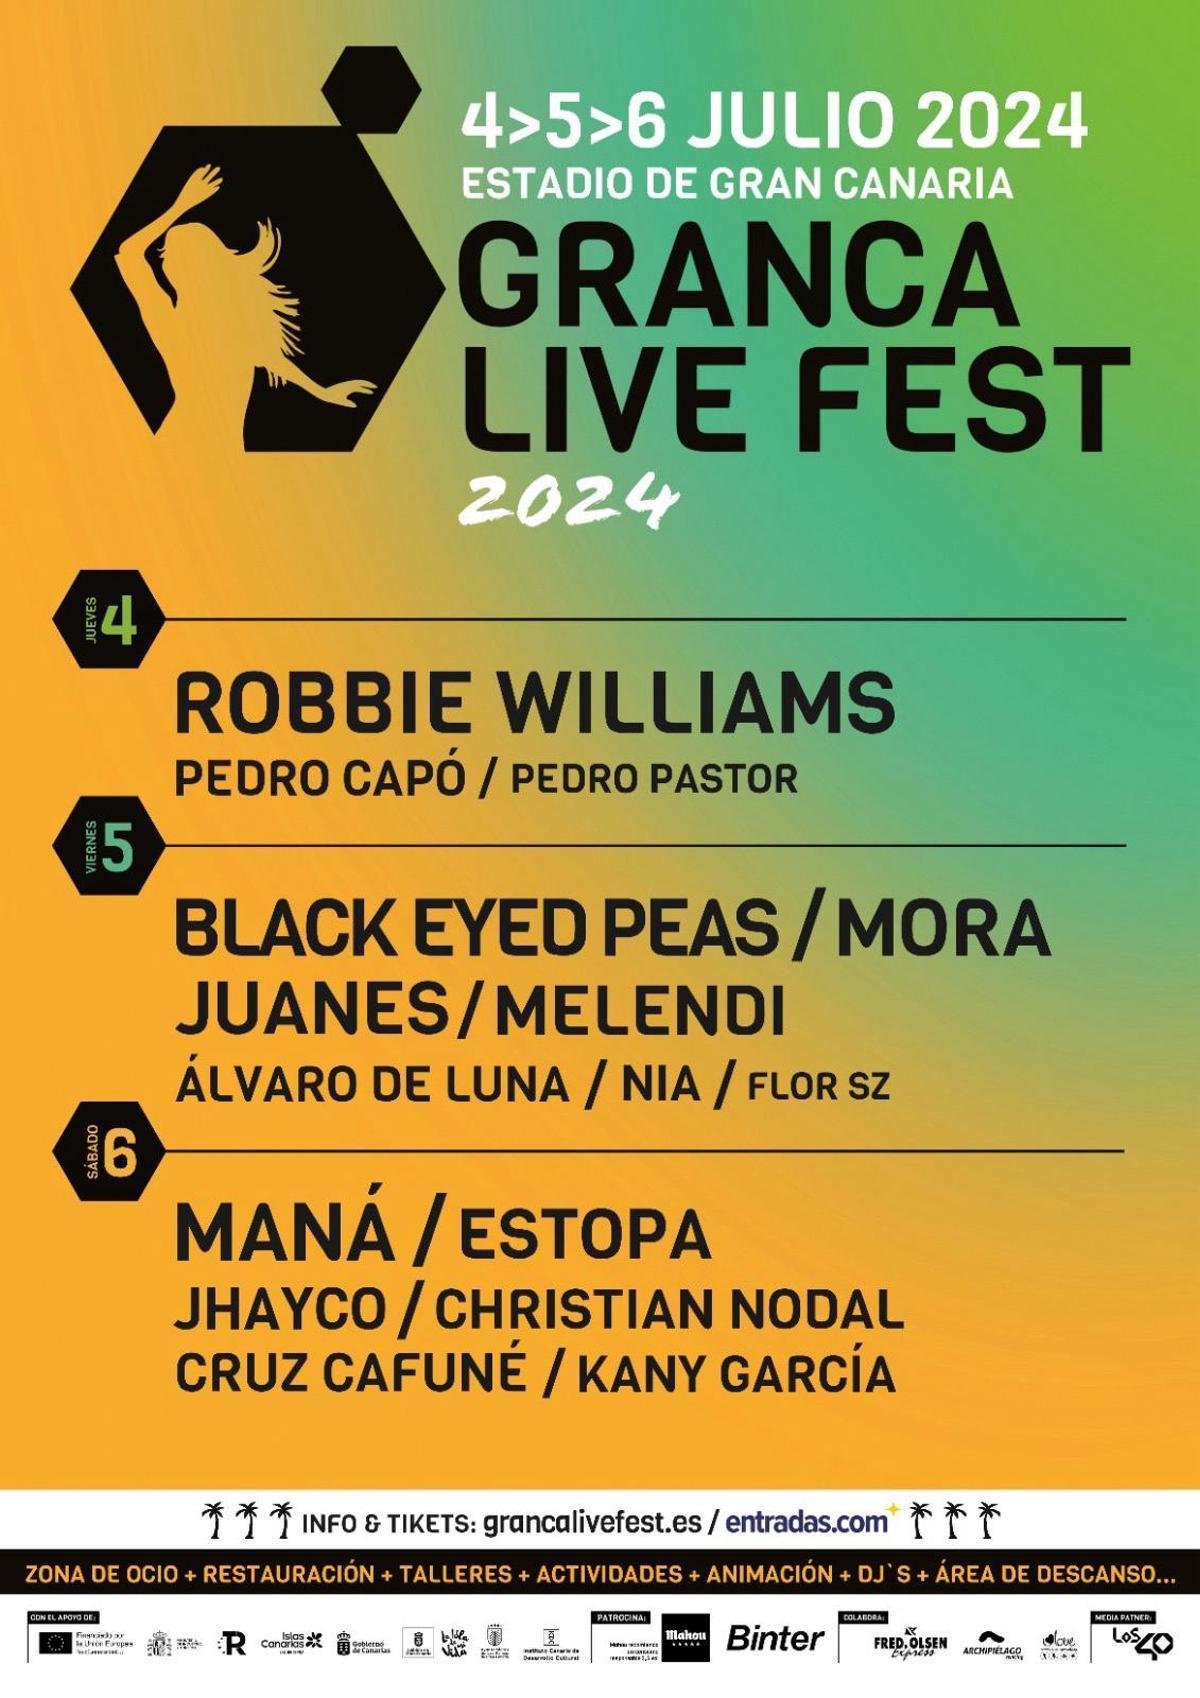 Granca Live Fest confirma un tercer día de festival y anuncia a Robbie Williams como cabeza de cartel.